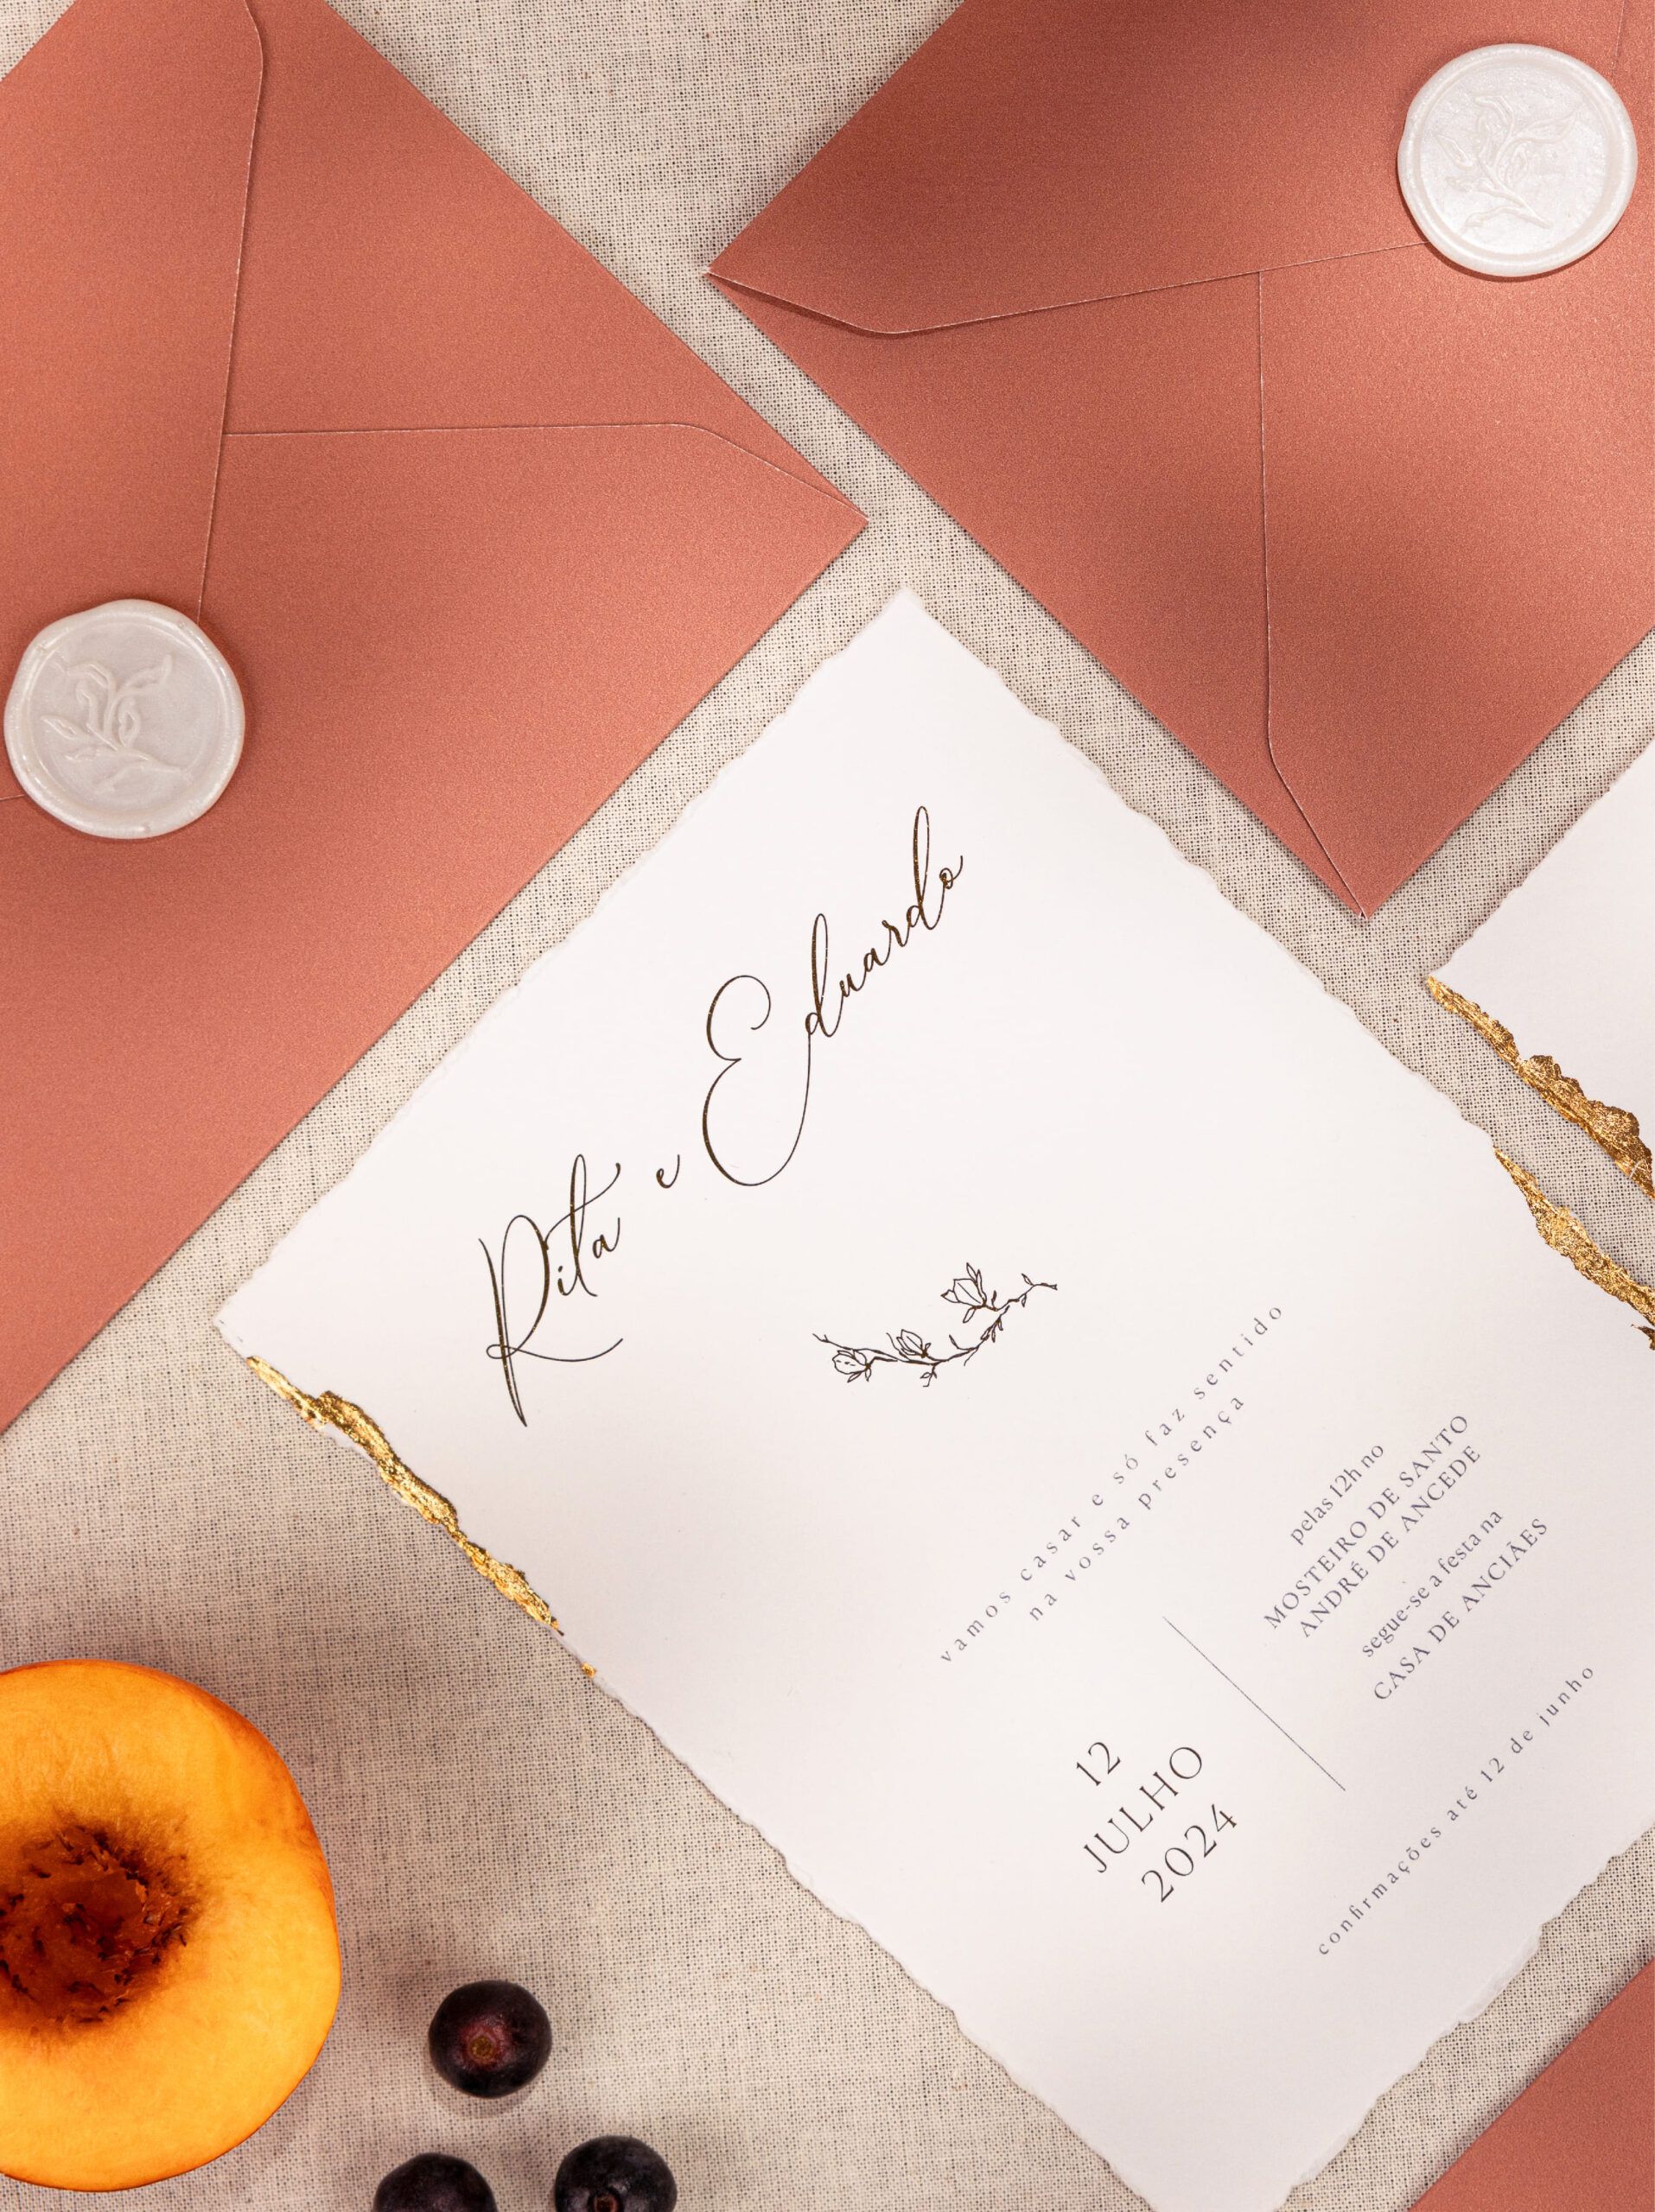 Convite de Casamento com detalhes dourados em papel com efeito rasgado